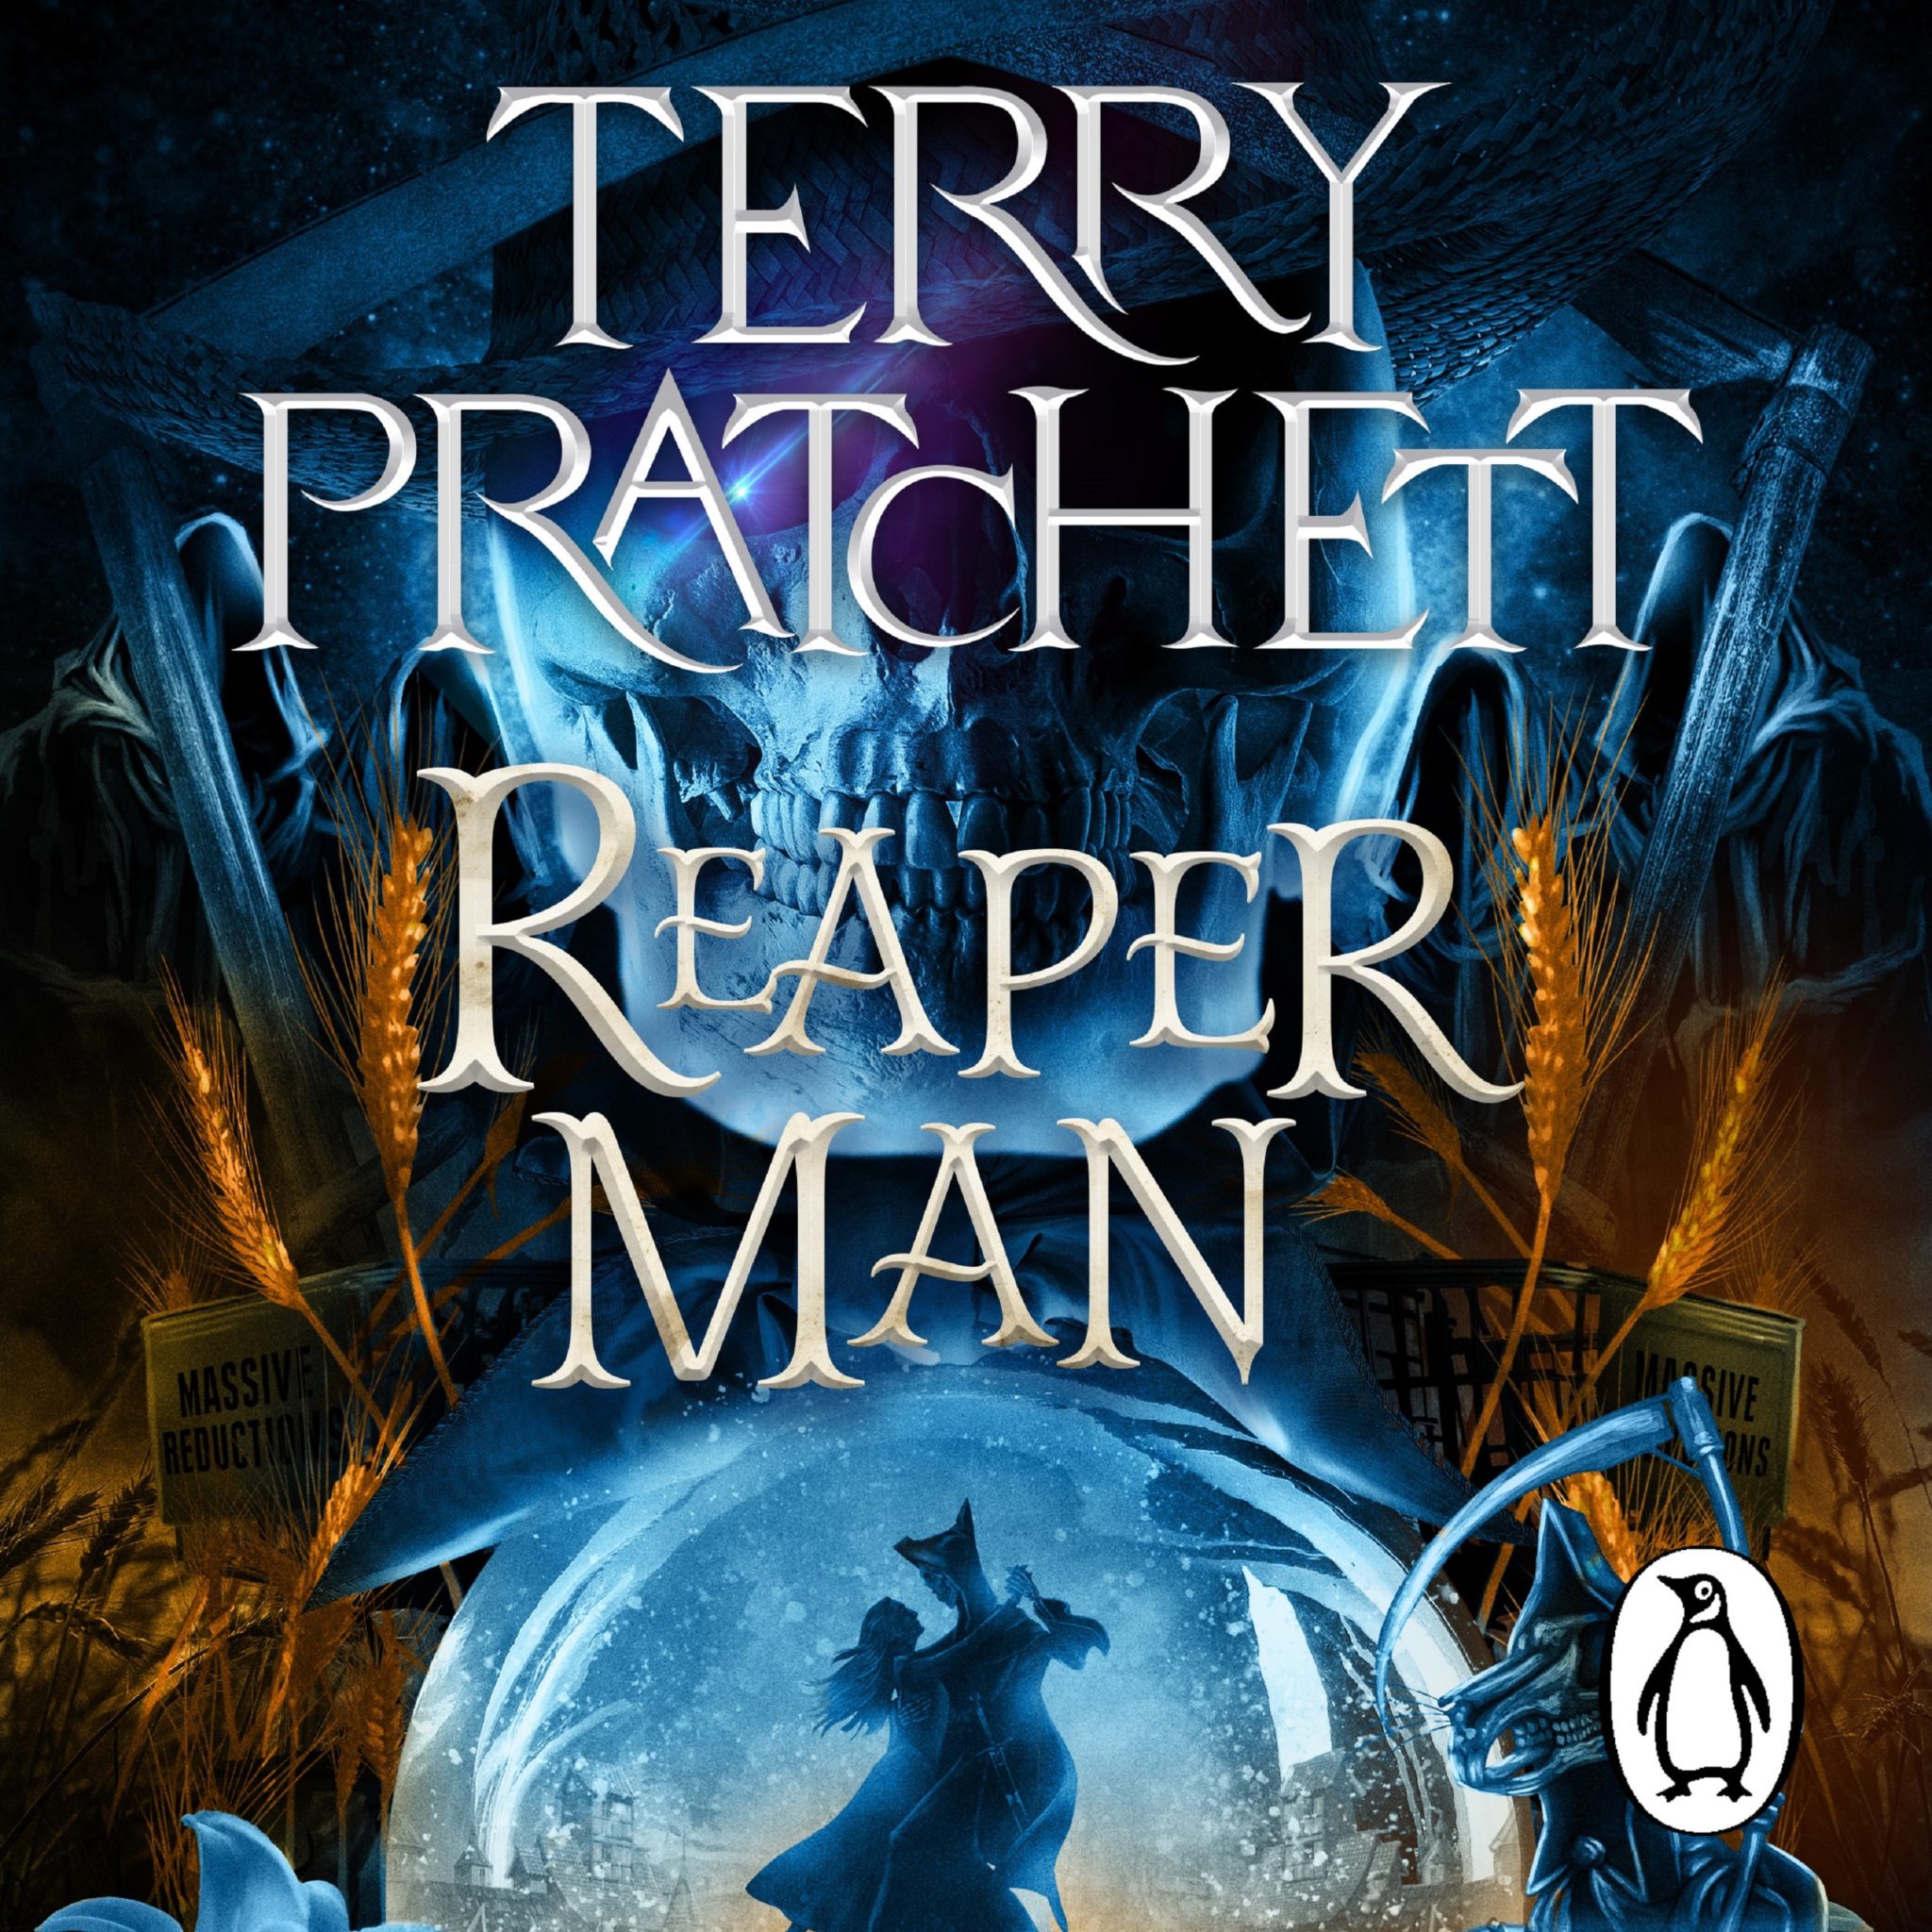 Терри пратчетт мрачный жнец. Pratchett Terry "Reaper man". Мрачный Жнец Терри Пратчетт книга.